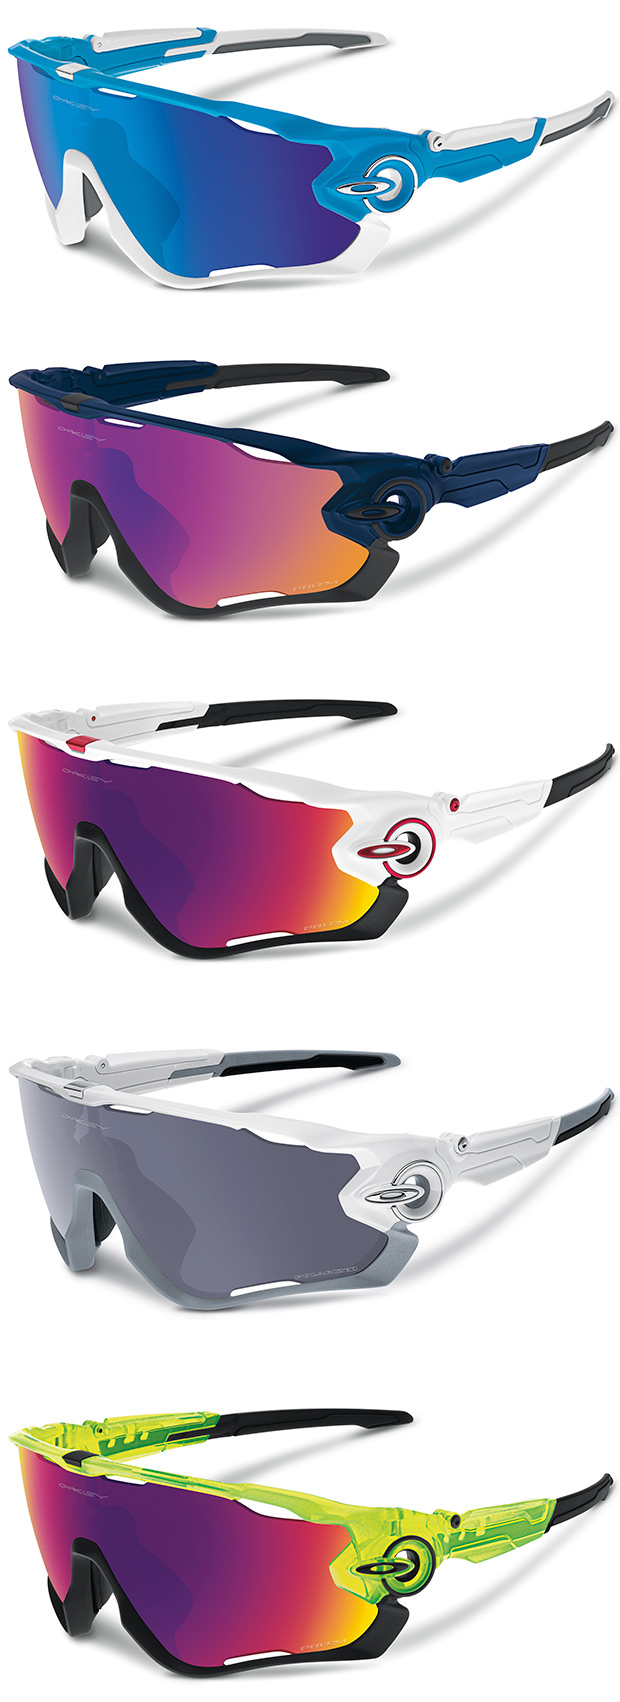 Jawbreaker, las nuevas (y avanzadas) gafas deportivas de Oakley